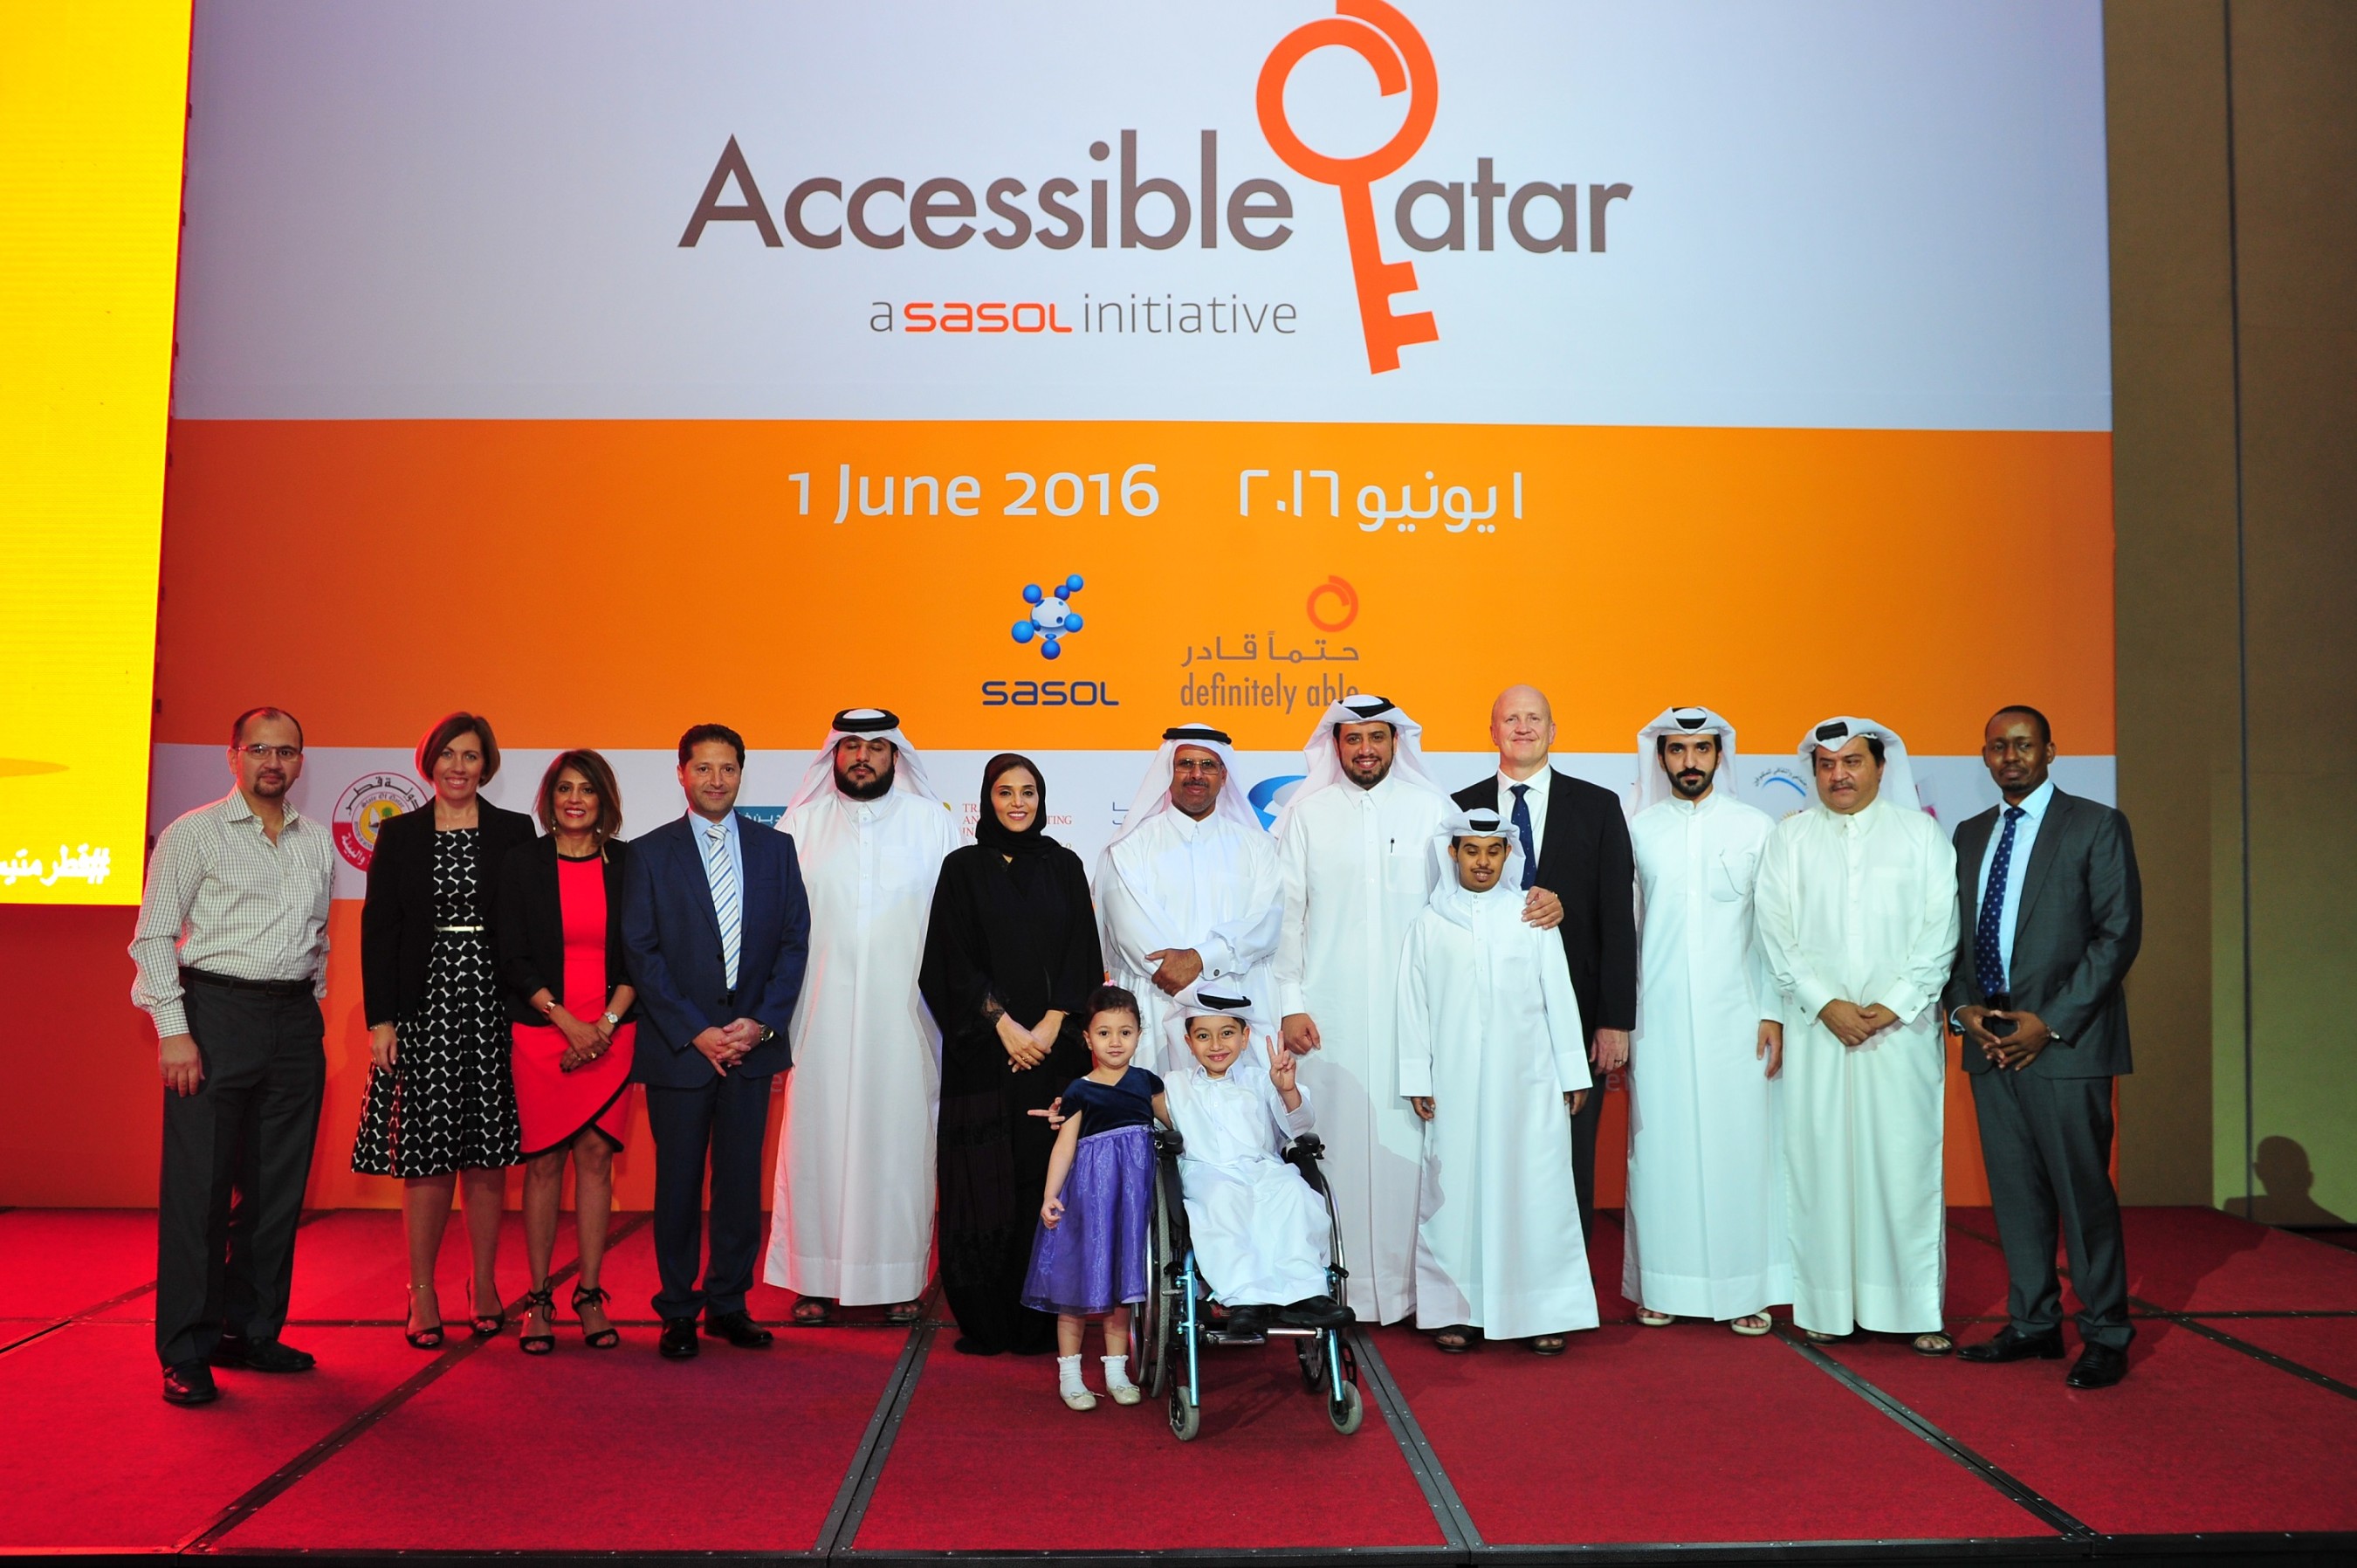 ساسول وشركاؤها يطلقون مبادرة “قطر متيسرة للجميع” لخدمة ذوي الاعاقة 